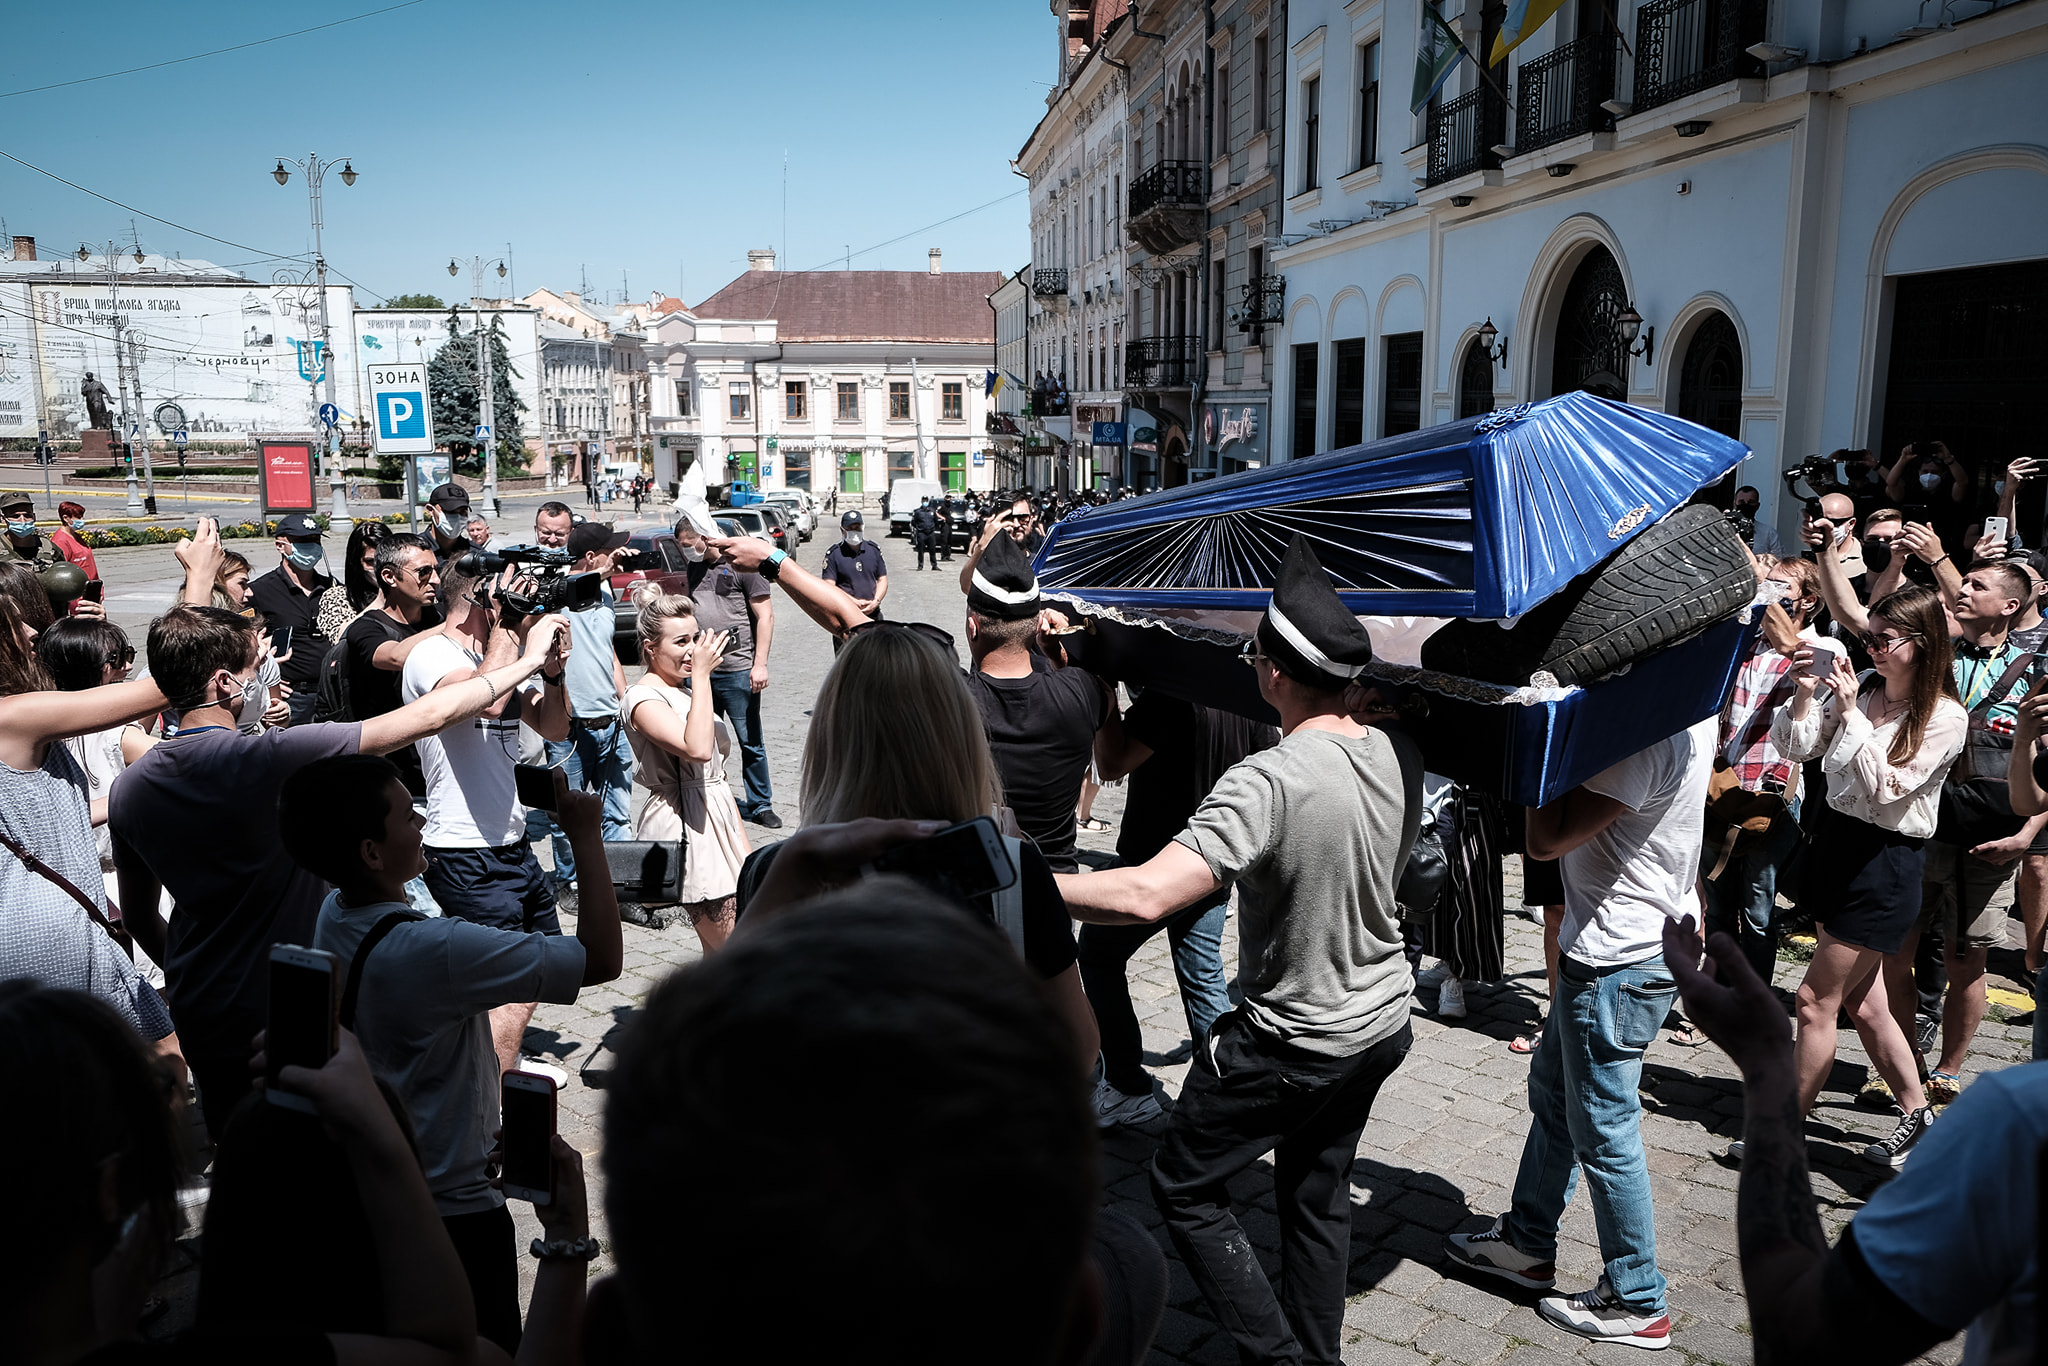 'Похорони дороги у місті':  з'явилося відео масштабного протесту із труною і шинами у Чернівцях  